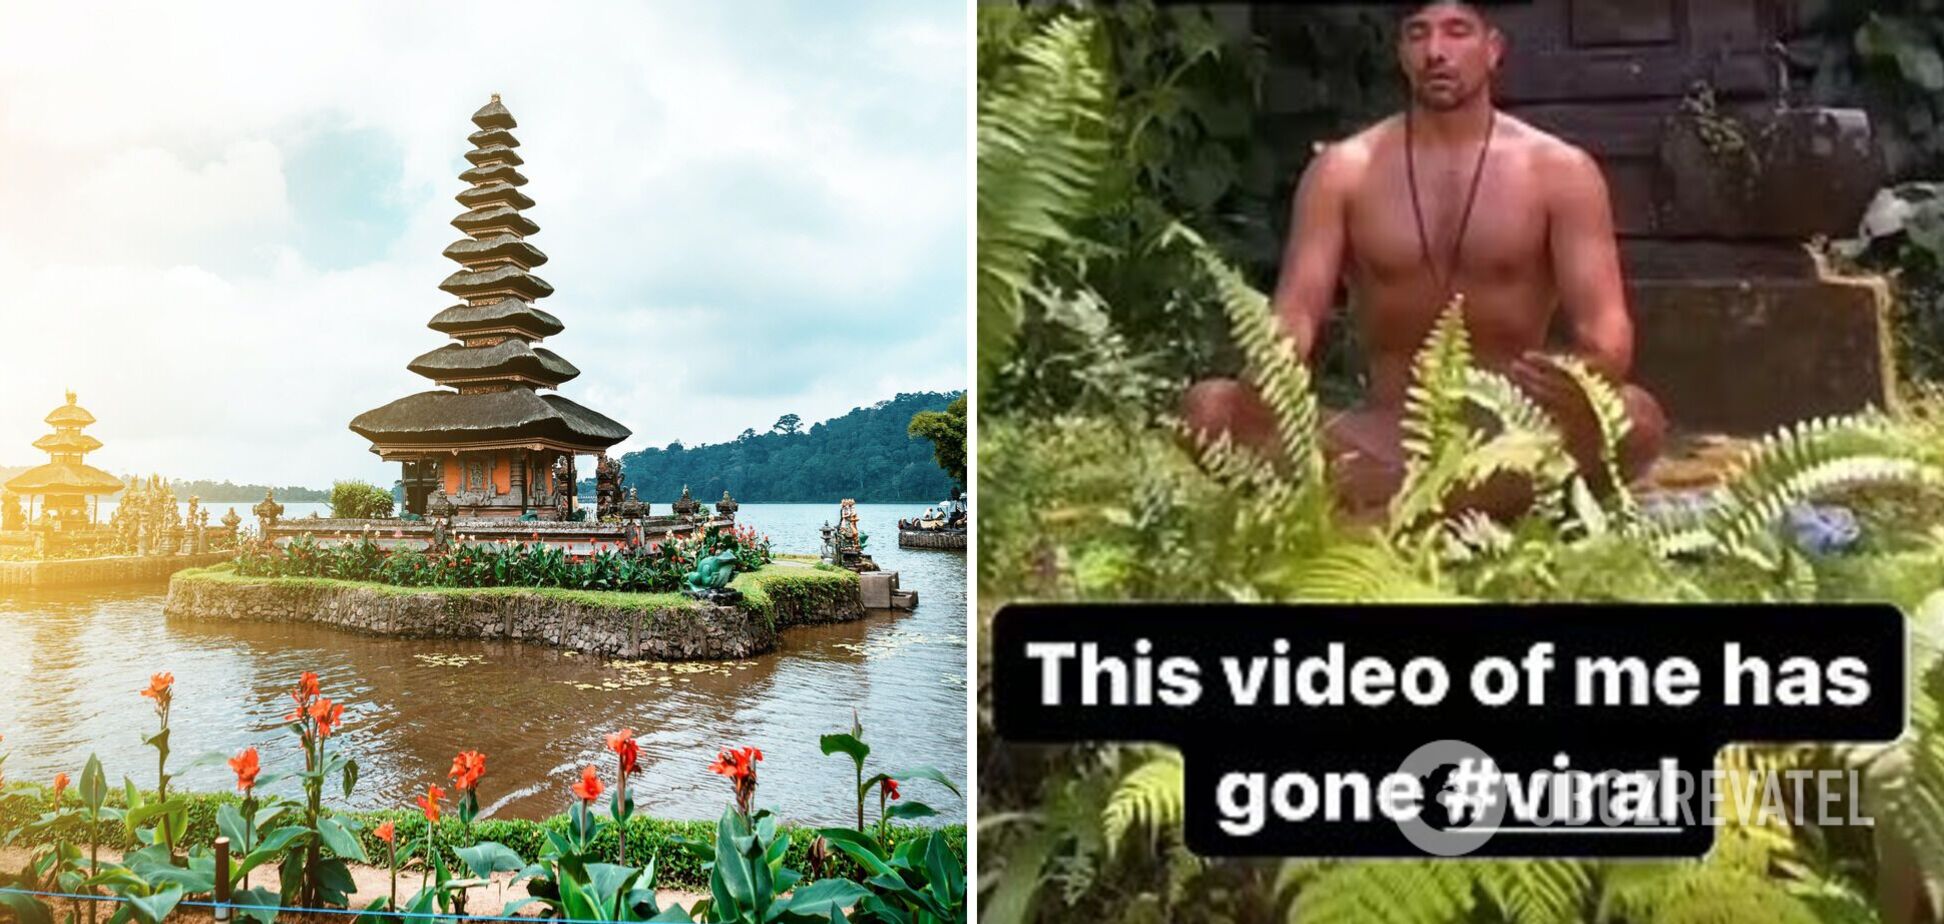 Турист, который медитировал голым в индуистском храме, поднял переполох на Бали. Видео стало вирусным